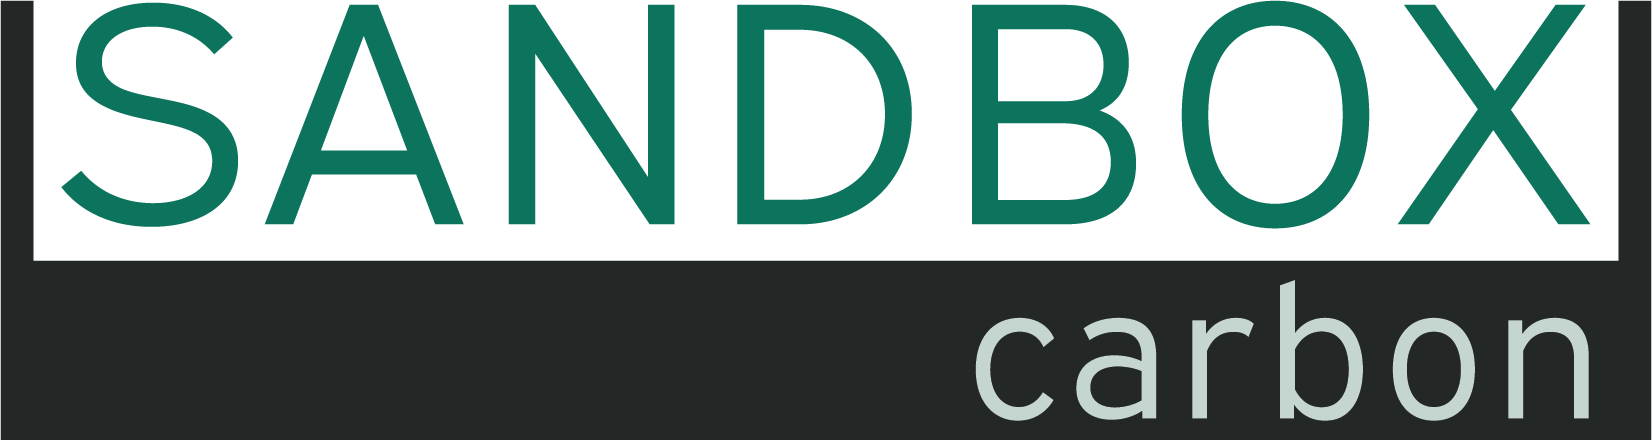 Sandbox_Carbon_logo